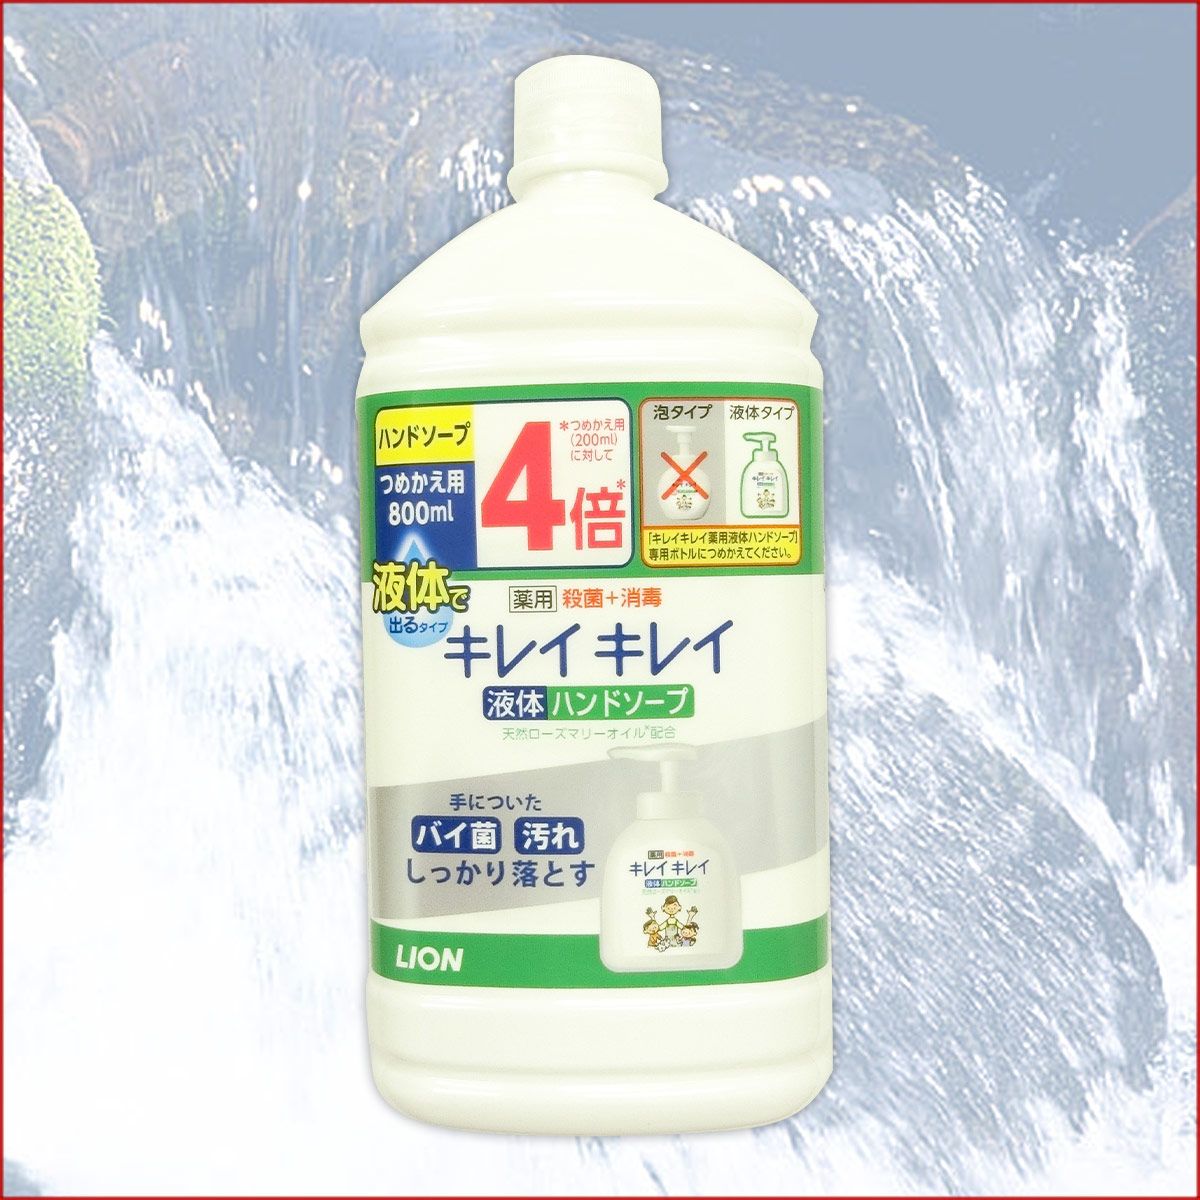 Nước rửa tay Lion  800ml. Nhật Bản